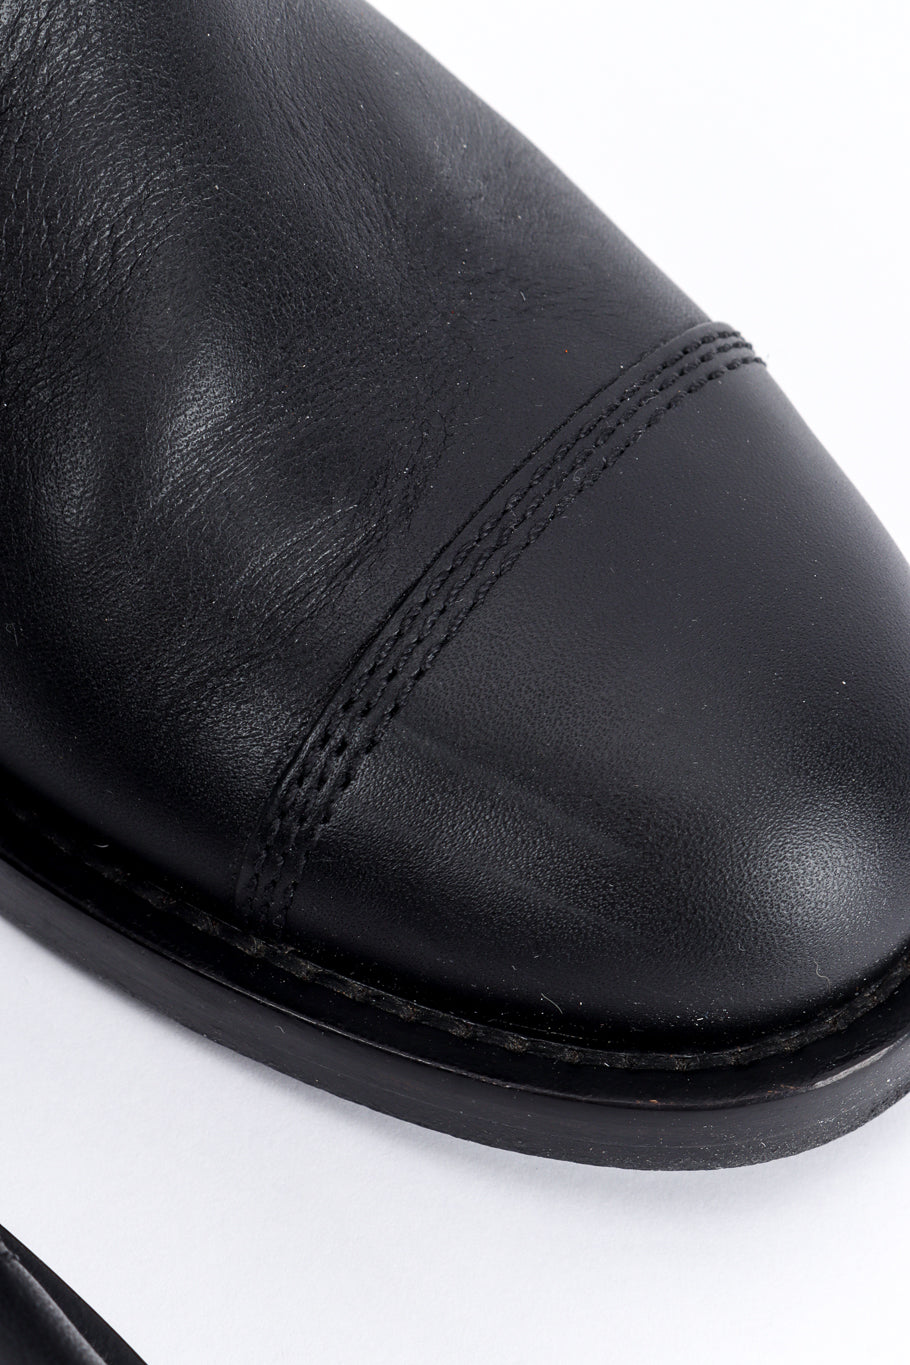 Chanel CC Quilted Mid-Calf Boots toe closeup @recess la